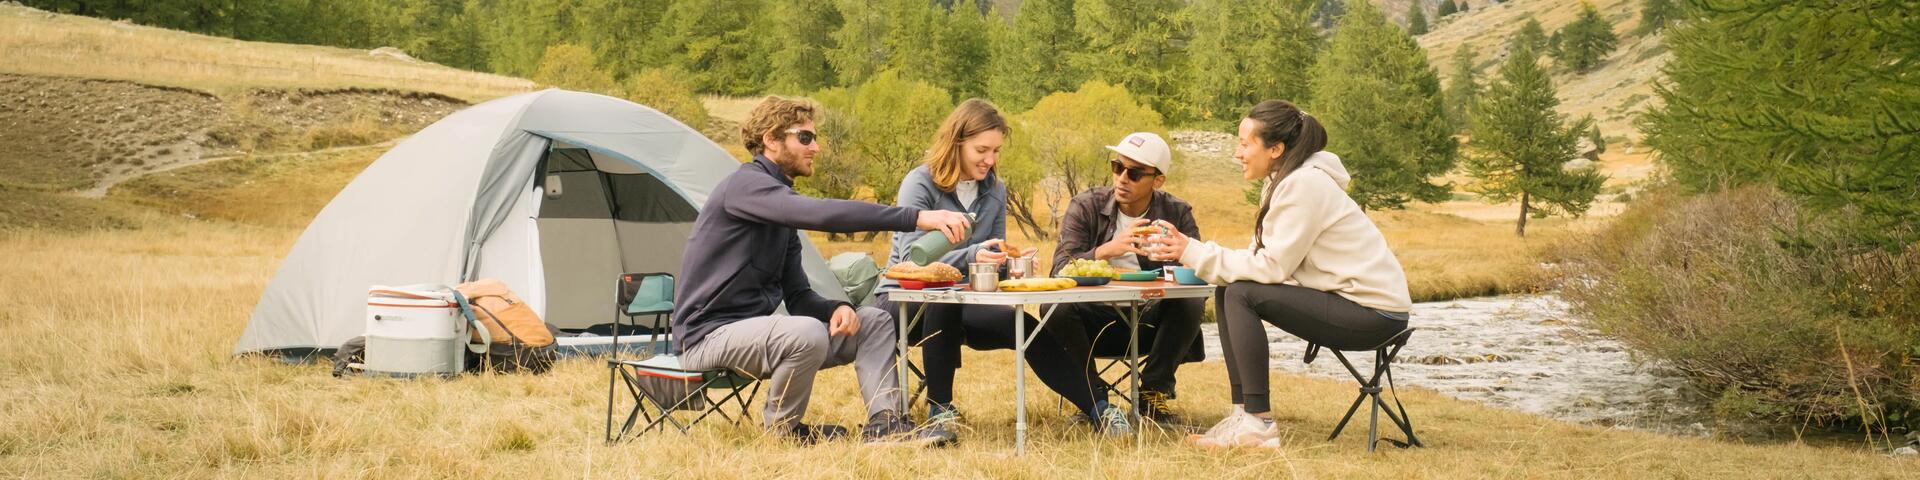 kobiety i mężczyźni jedzący posiłek na krzesłach turystycznych obok namiotu 